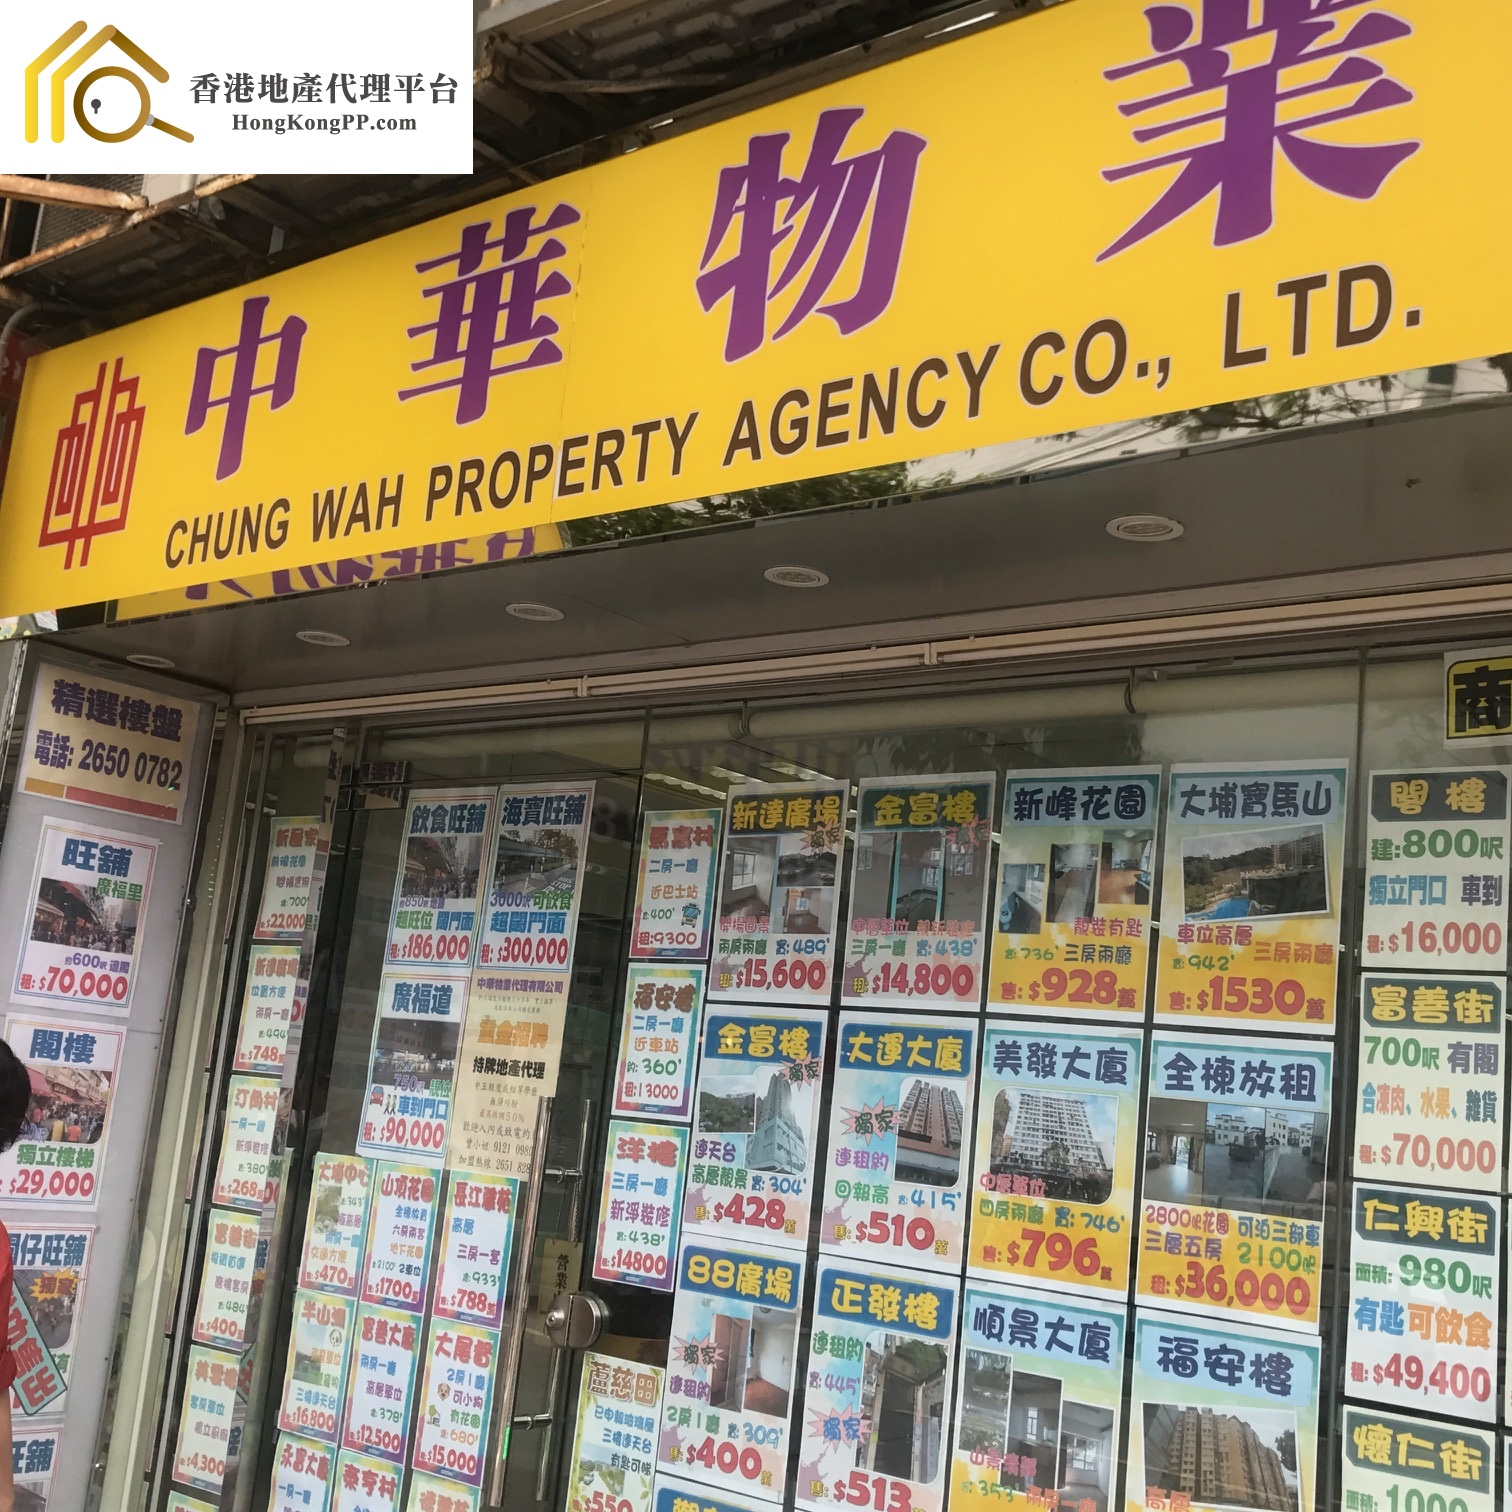 地產代理公司 Estate Agent: 中華物業代理 Chung Wah Property Agency